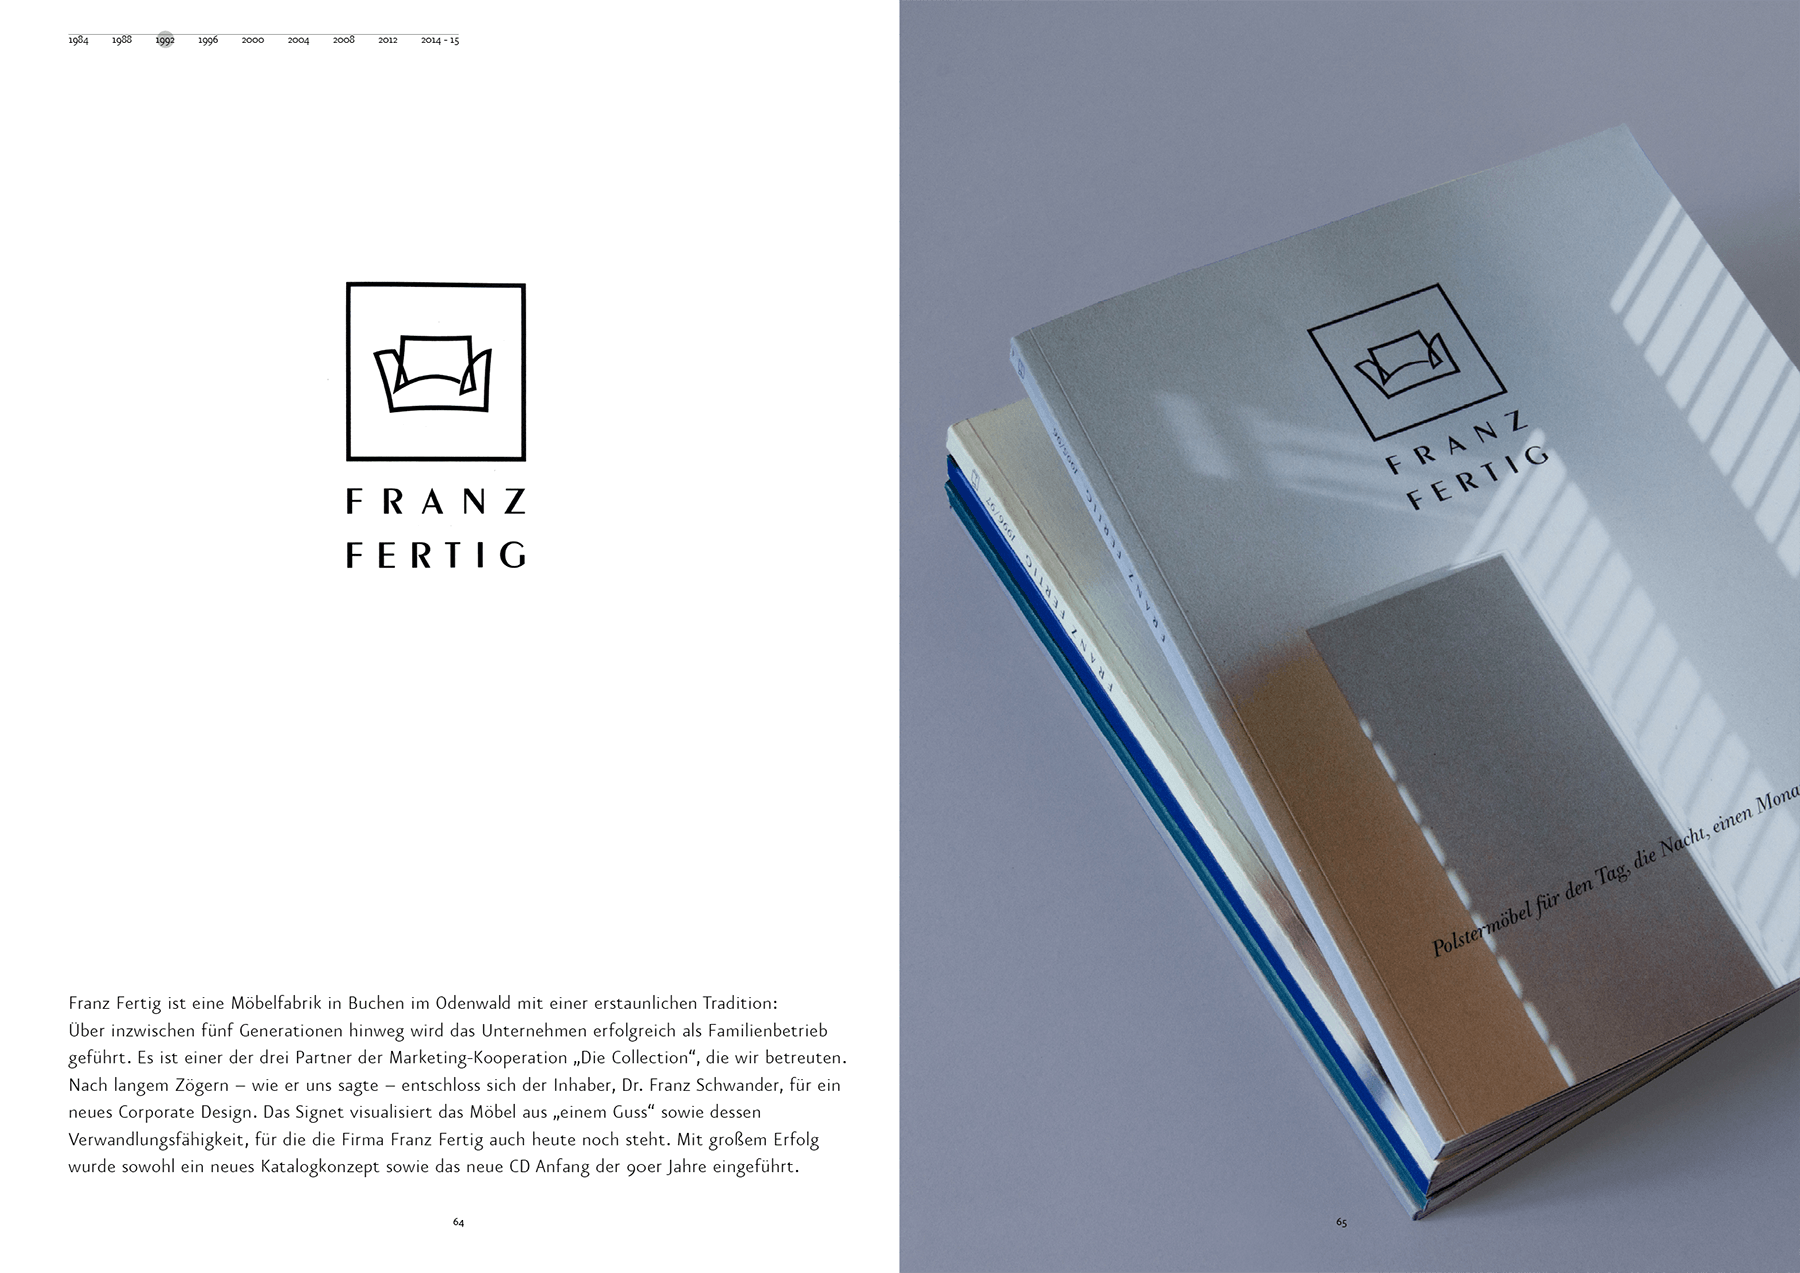 sabine-mescher-sichtung-designbilderbuch-corporate-design-franz-fertig-möbel-.png